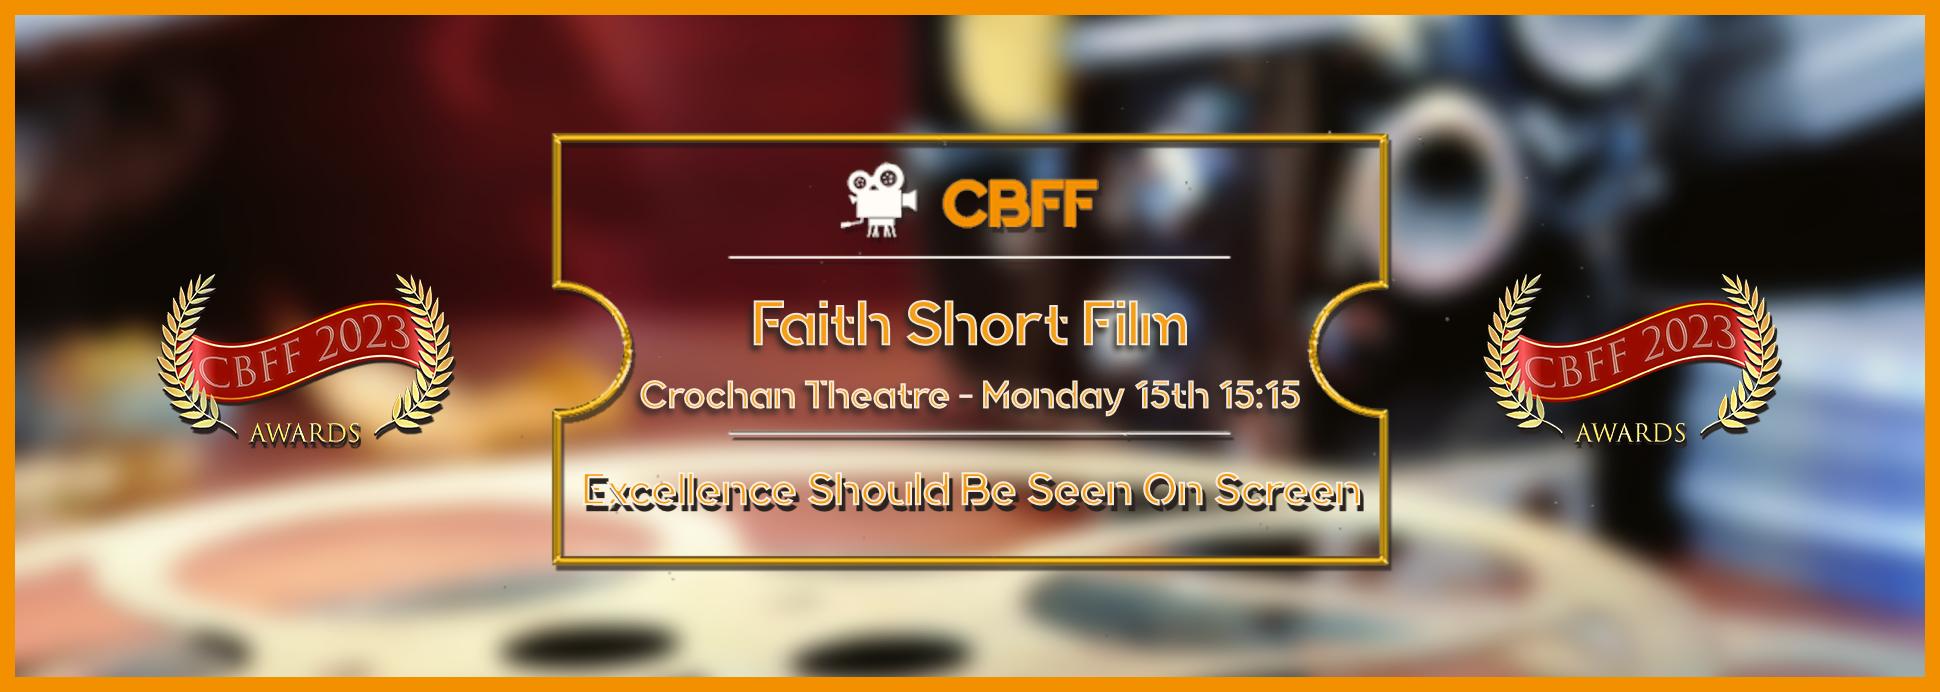 Ffilm Fer Crochan Faith 15th 15:15